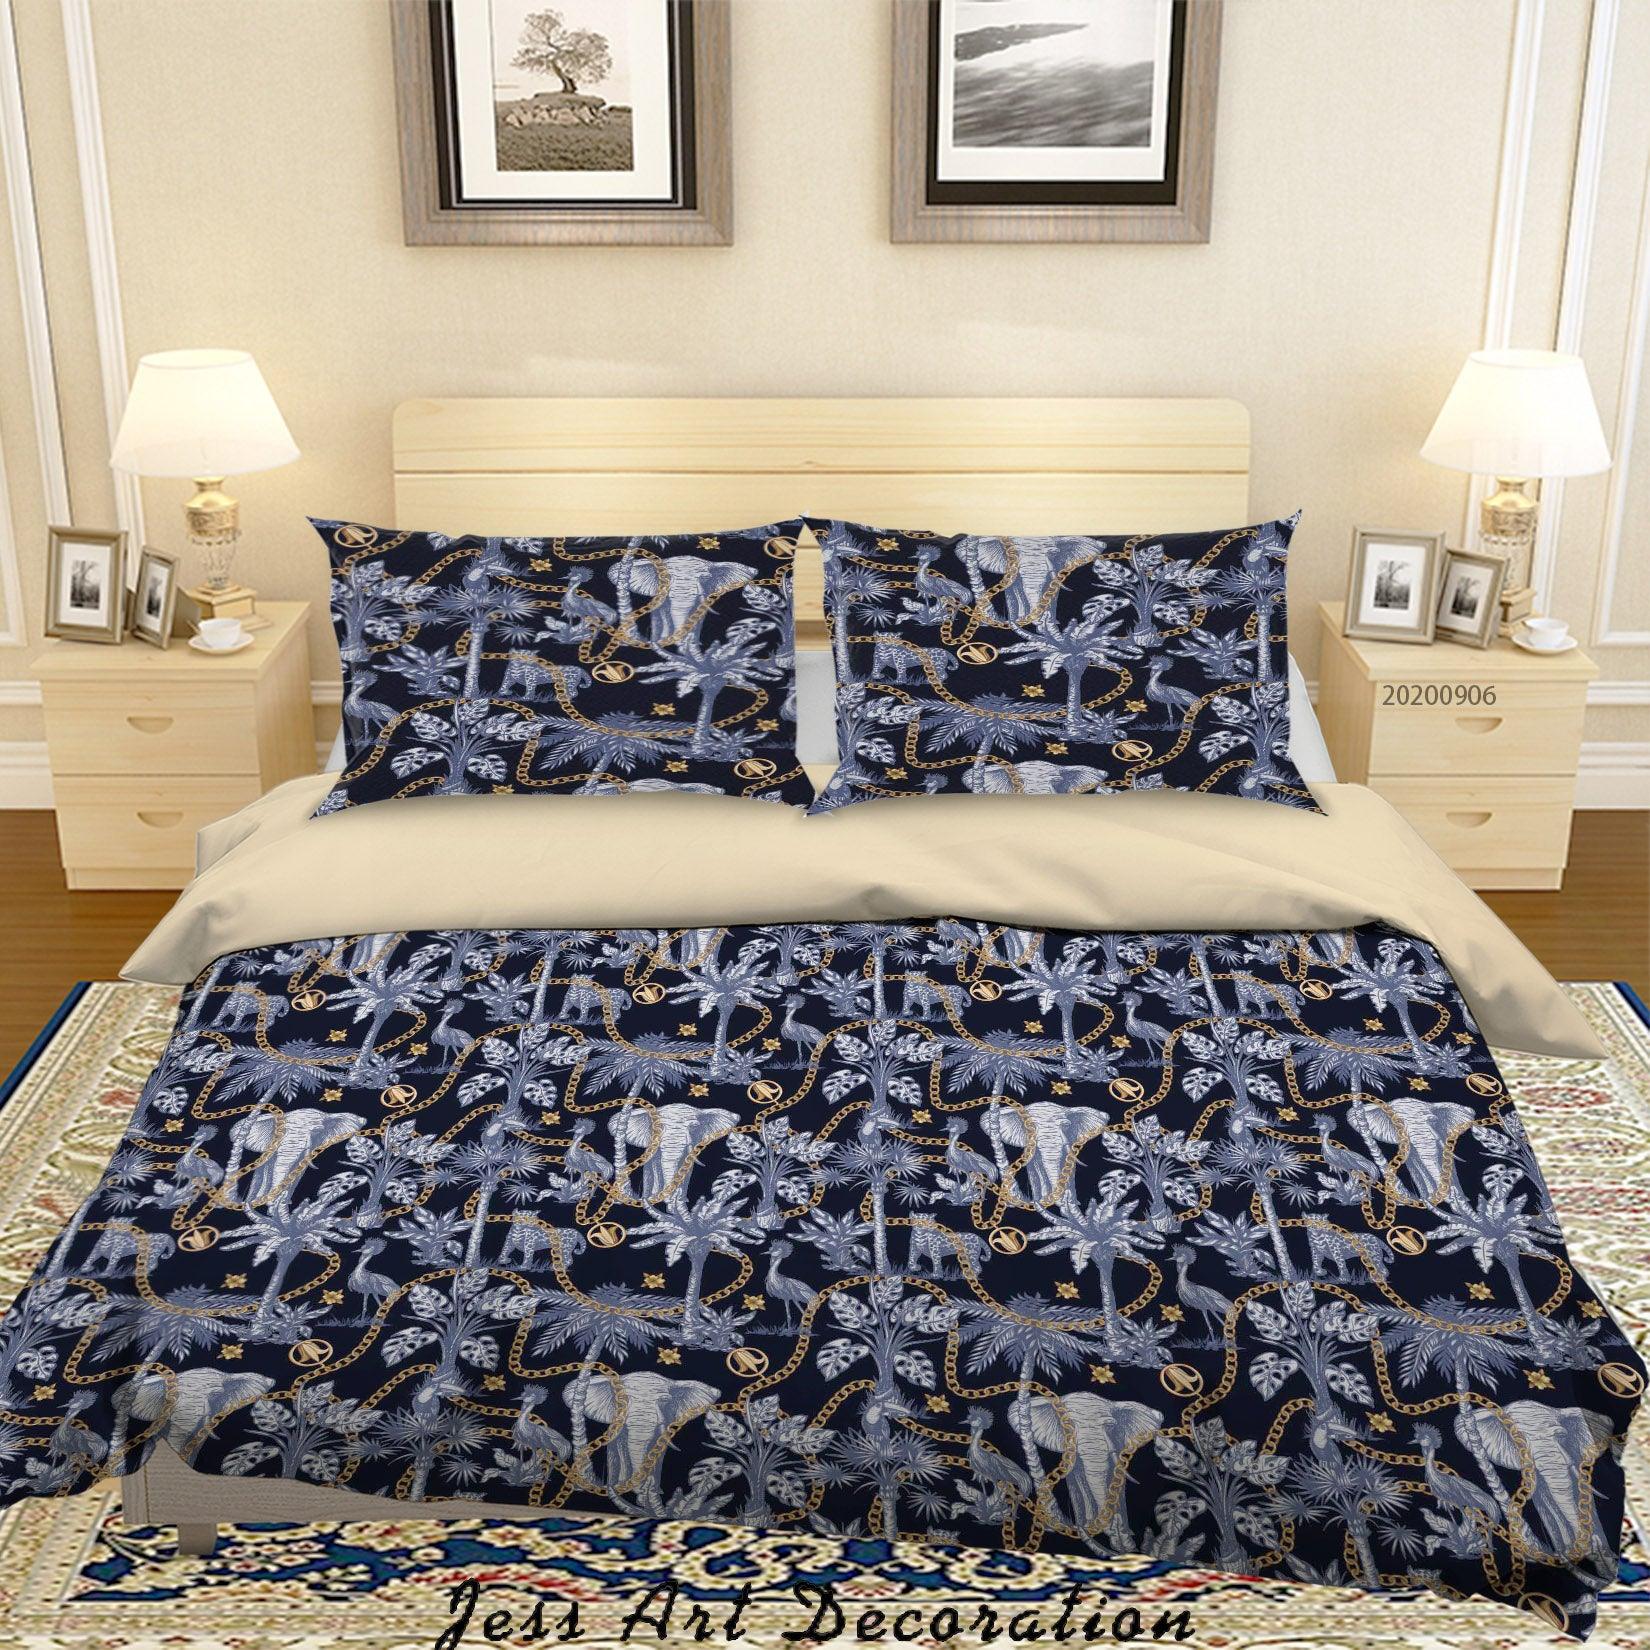 3D Vintage Tropical Leaves Elephant Pattern Quilt Cover Set Bedding Set Duvet Cover Pillowcases WJ 3663- Jess Art Decoration